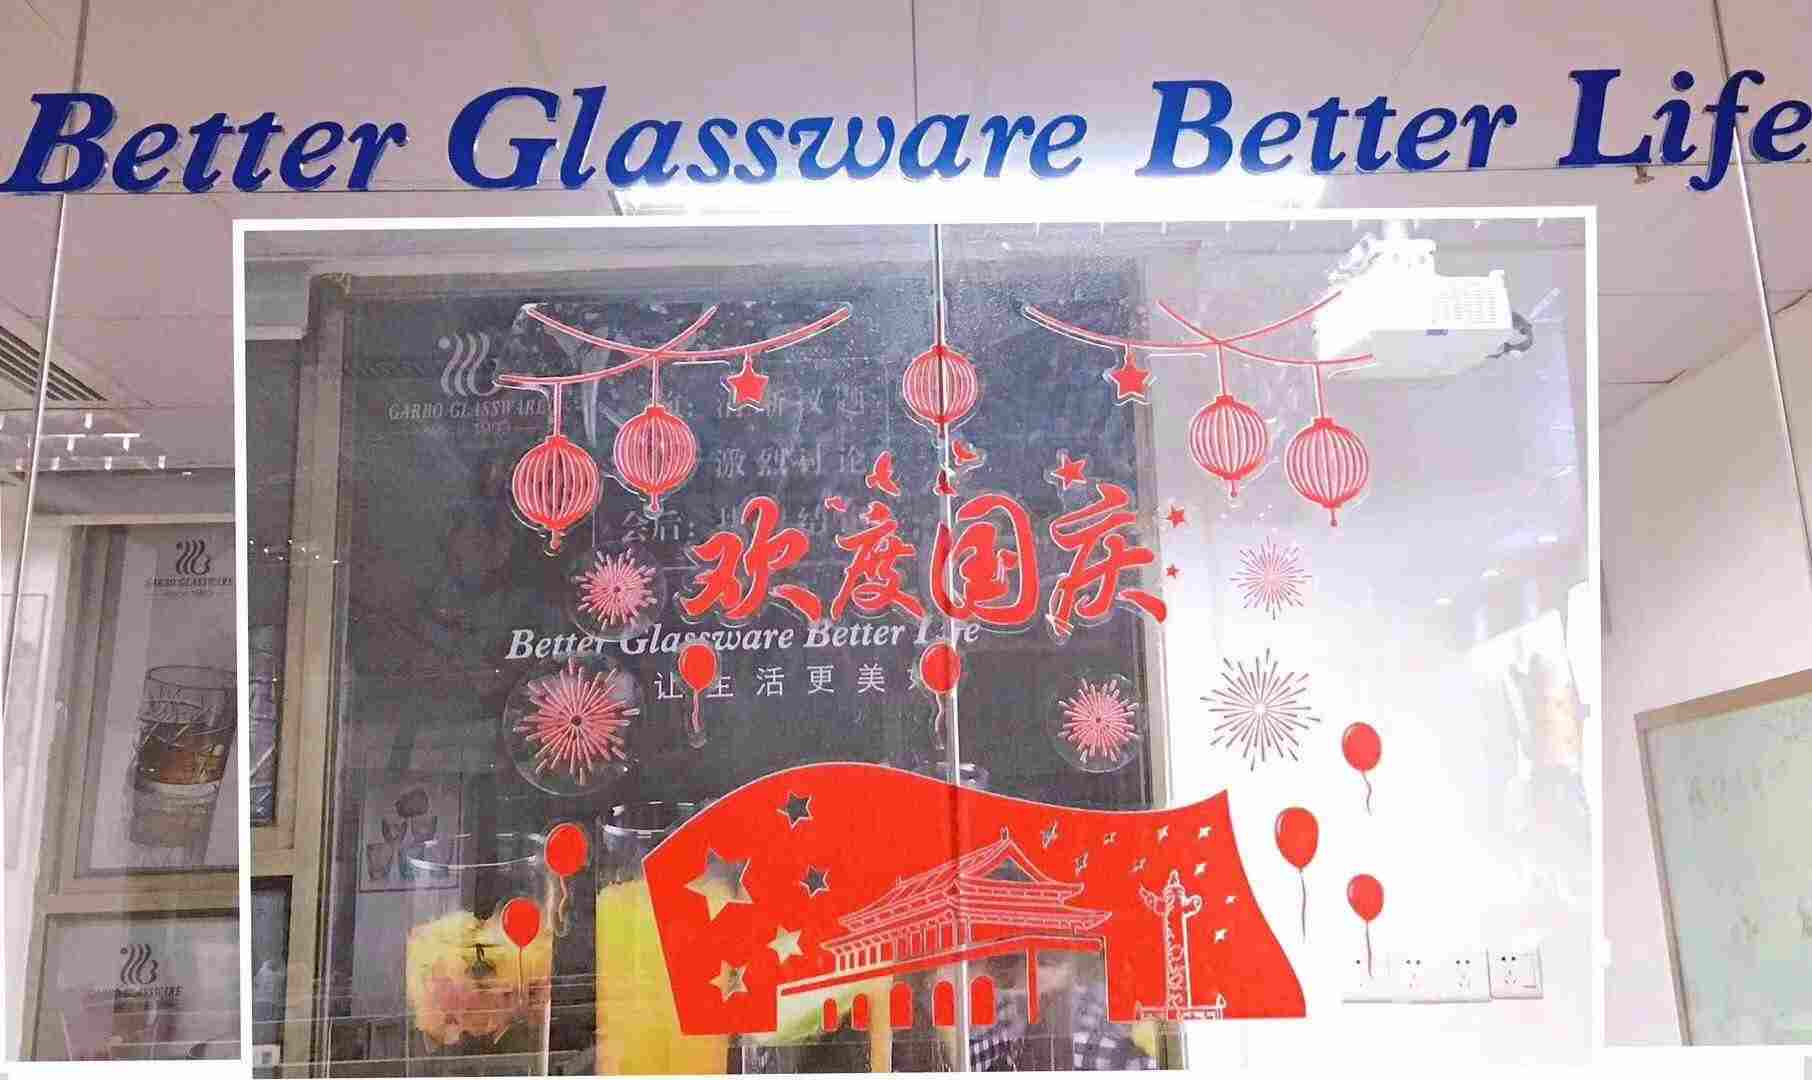 Thông báo về kỳ nghỉ lễ quốc gia của Garbo Glassware